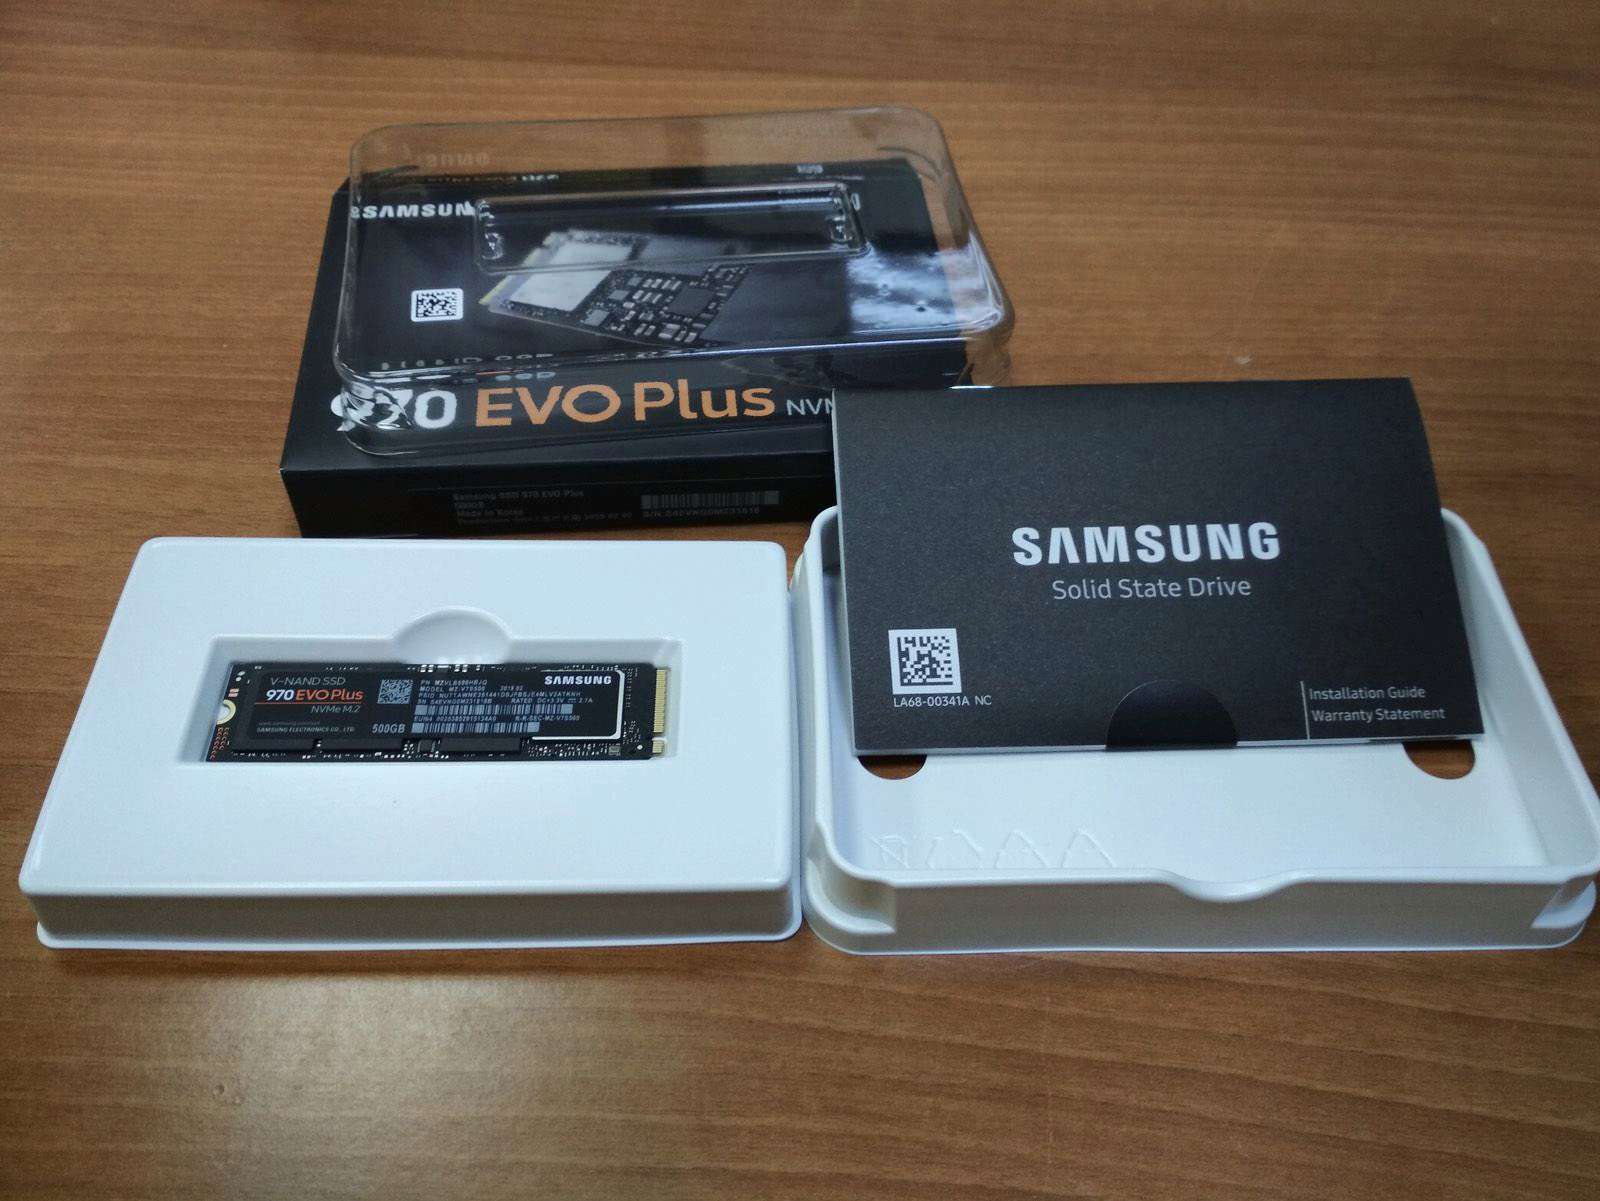 Samsung 970 Evo 500 Gb